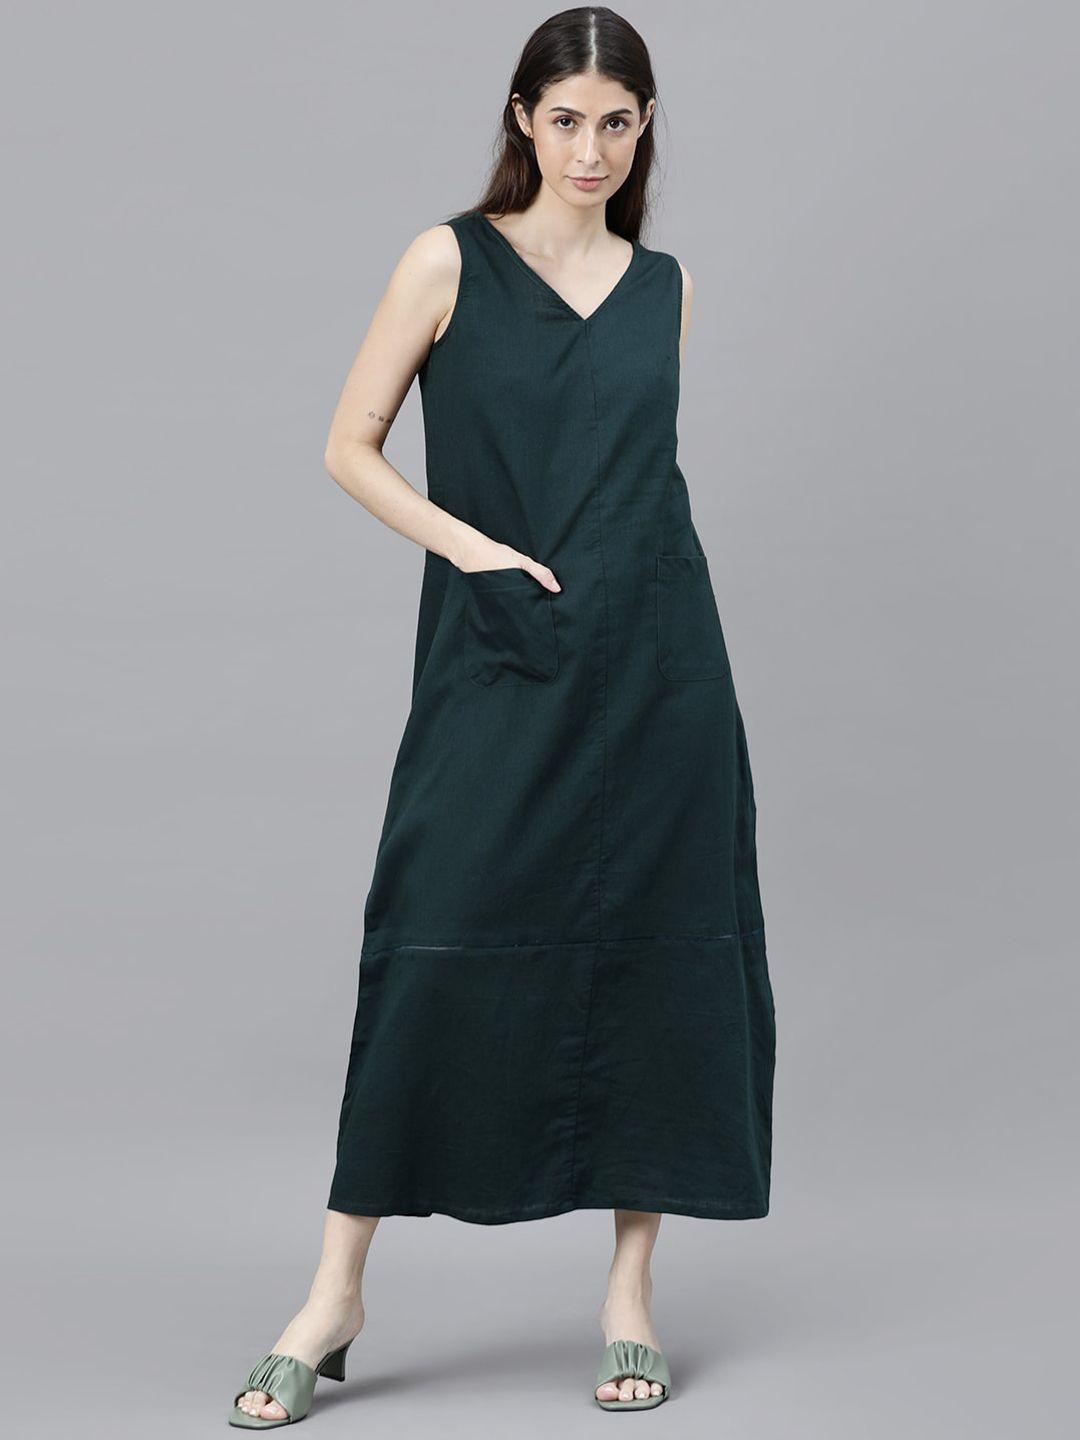 rareism green a-line midi dress